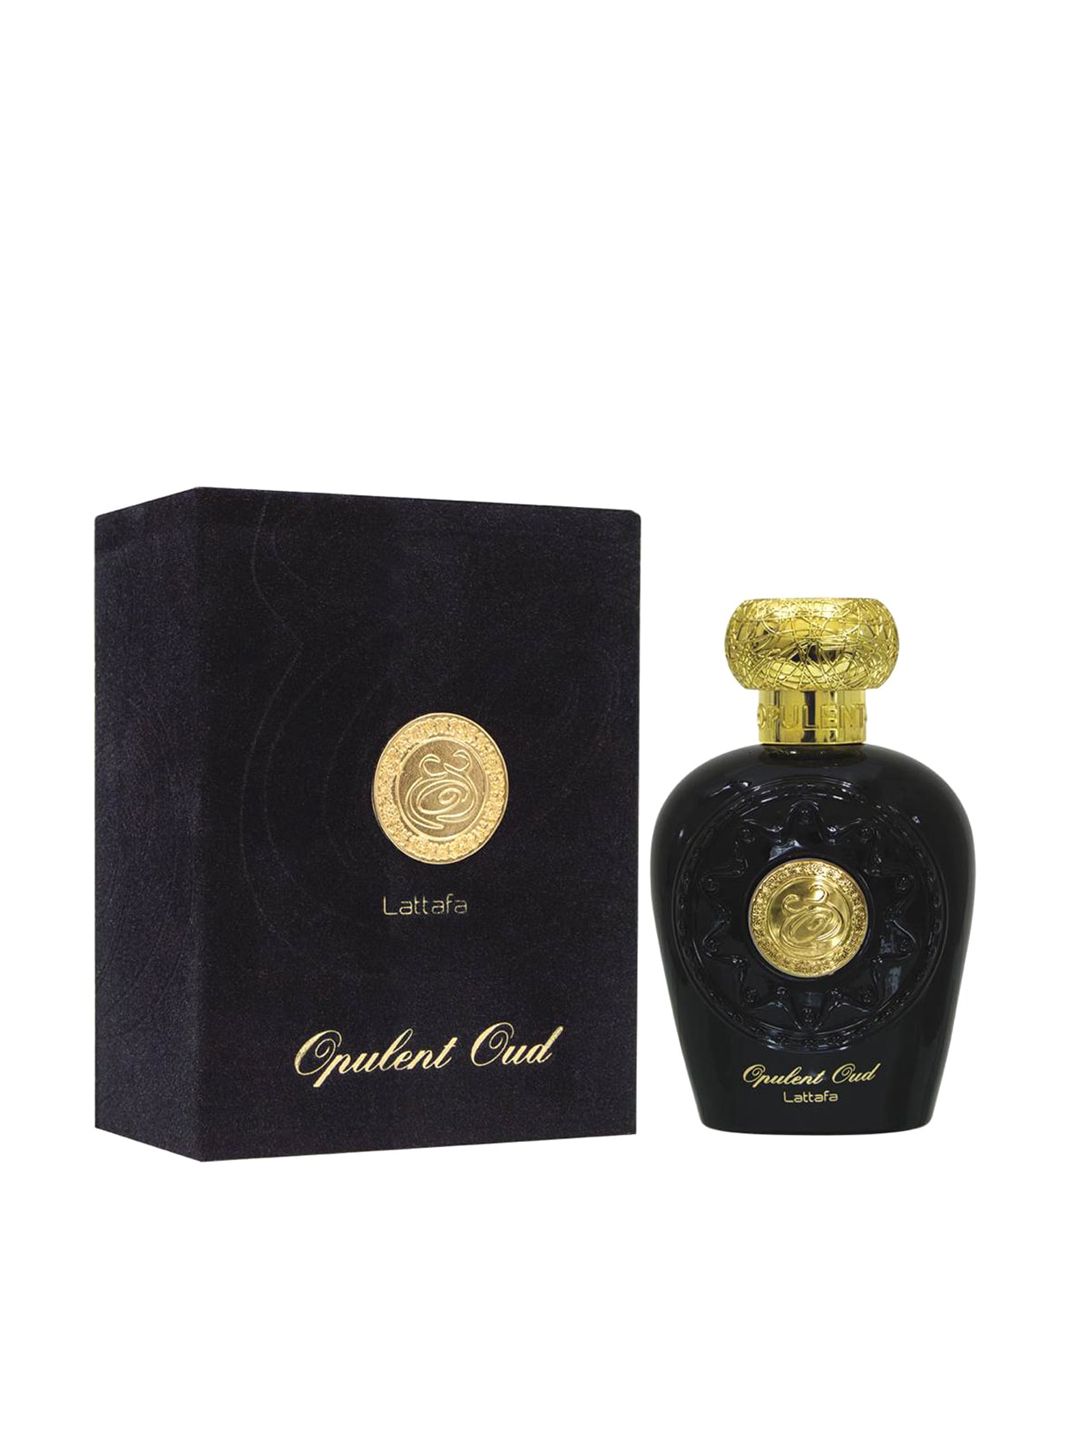 Lattafa Unisex Opulent Oud Eau De Parfum 100 ml Price in India